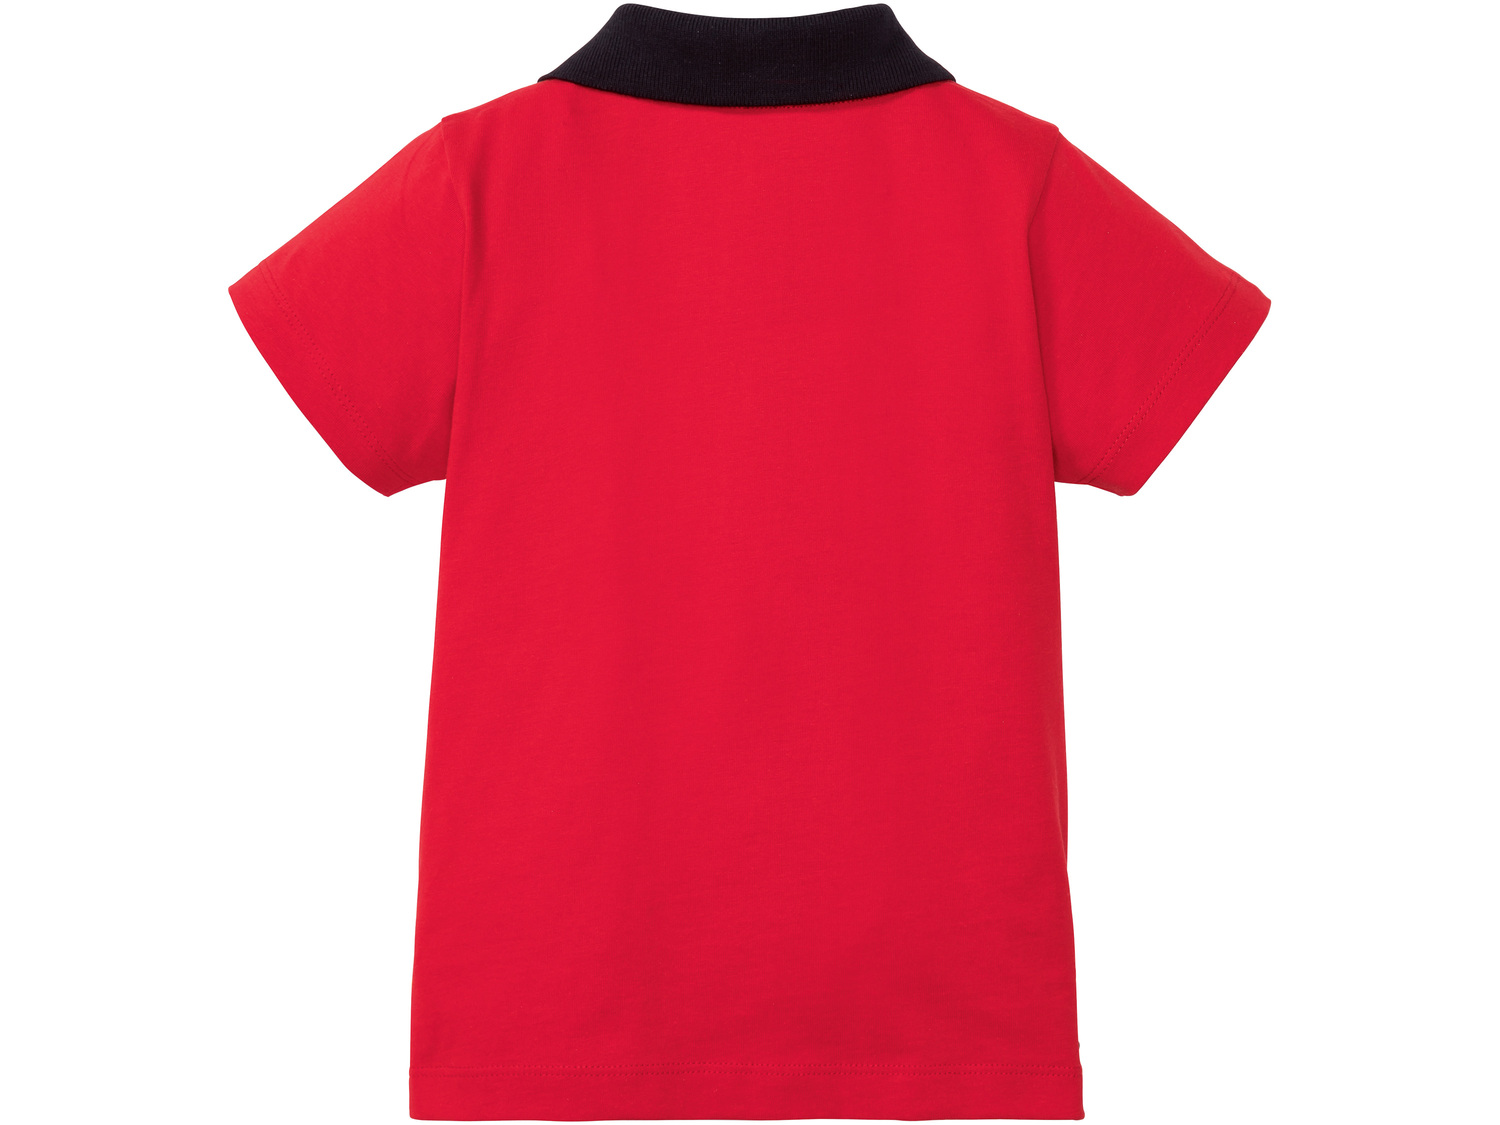 Koszulka chłopięca polo Lupilu, cena 12,99 PLN 
- rozmiary: 74-92
- 100% bawełny
Dostępne ...